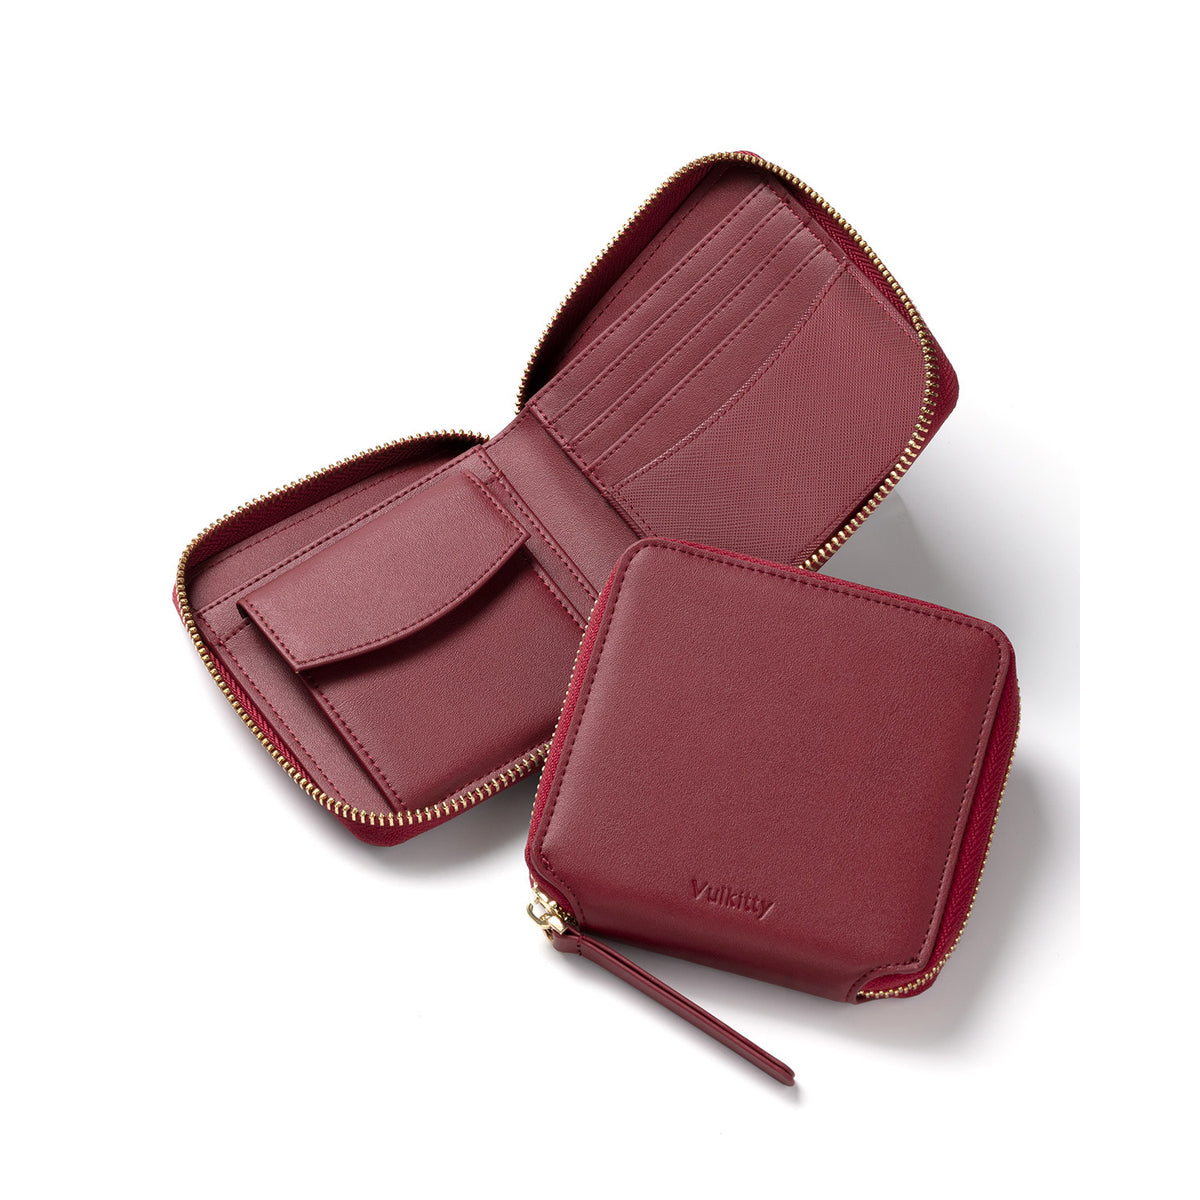 KW104- Women Bifold Leather Wallet with Zipper Pocket Case KW104-Wine